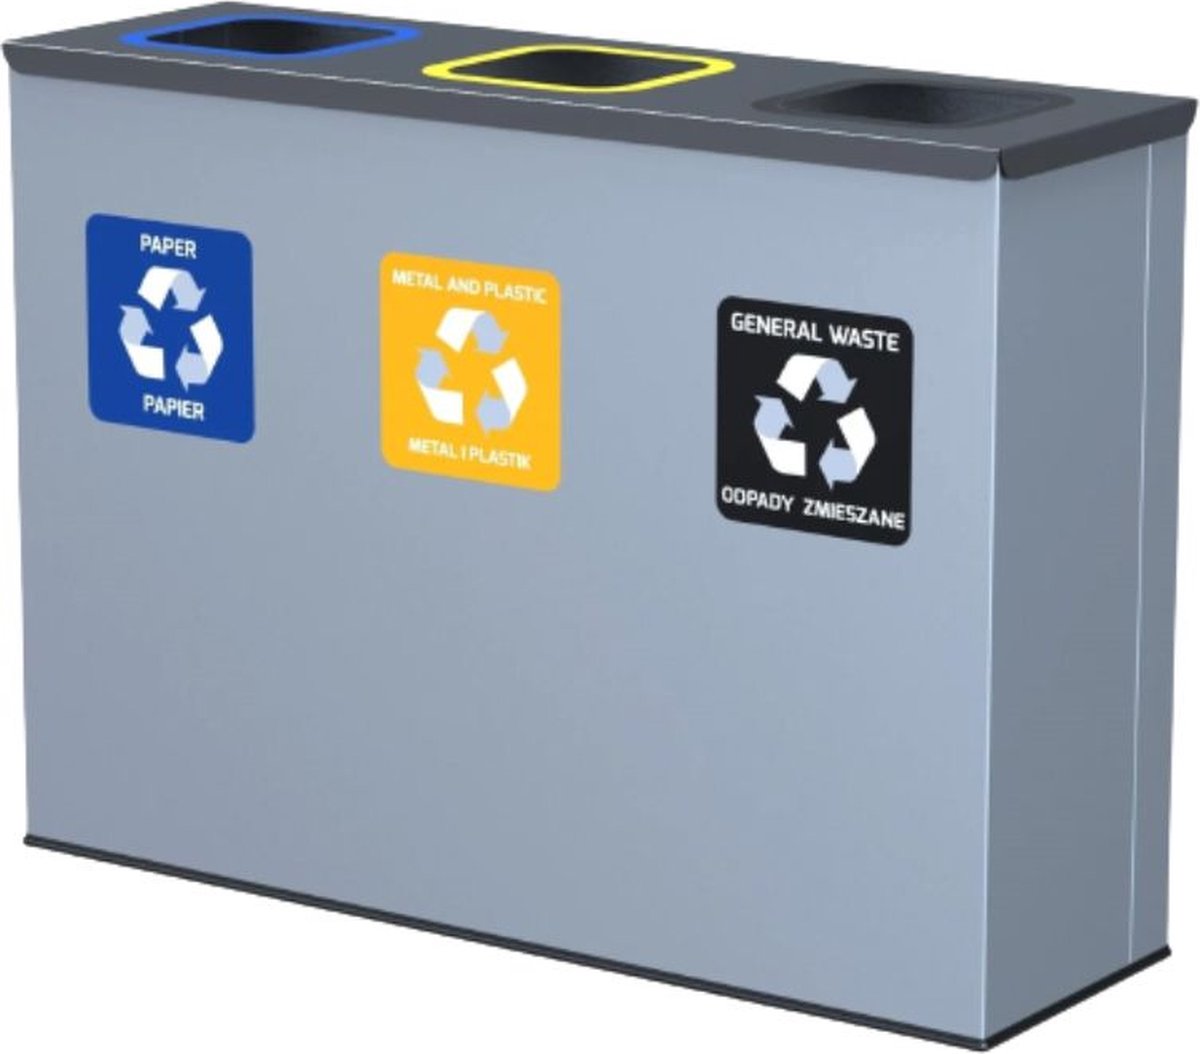 Prullenbak voor afvalscheiding – 30- 60L – Afval sorteren – Afval scheiden – Voor kantoor of bedrijf – Afvalscheidingsprullenbakken – afvalbak recycling voor huishouden – Vuilnisbak afvalscheiding.